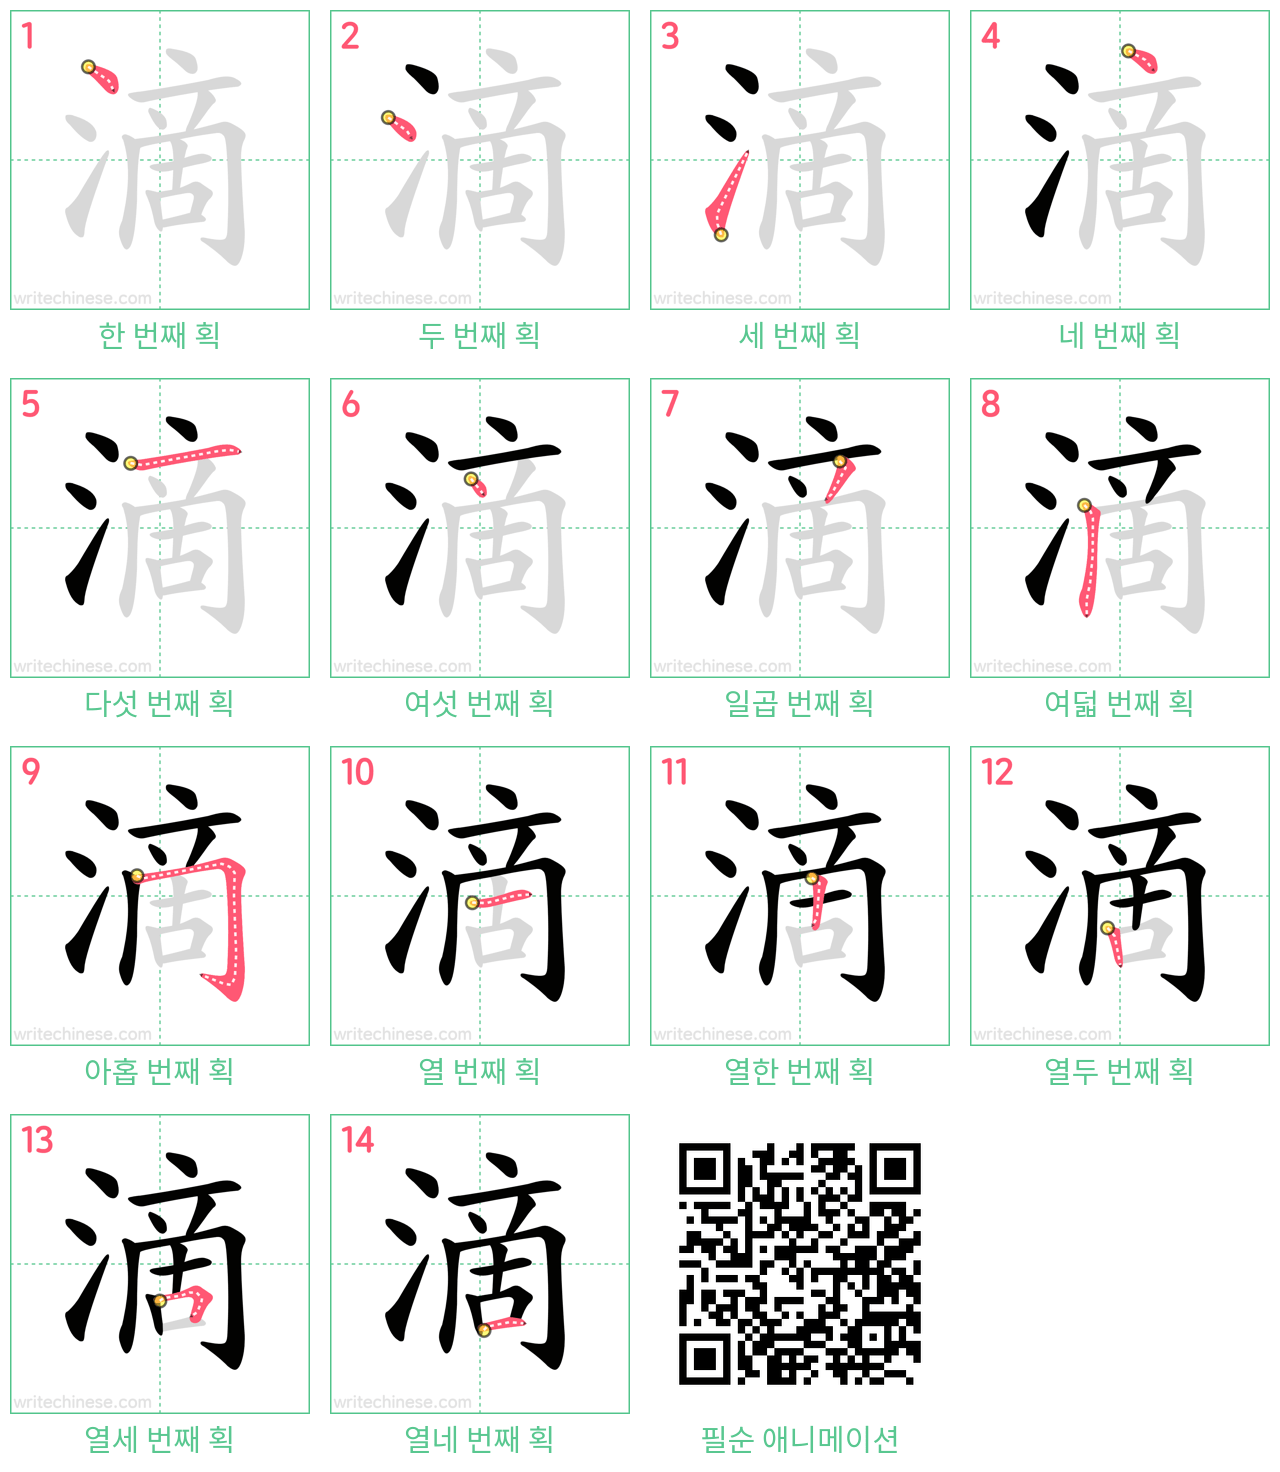 滴 step-by-step stroke order diagrams